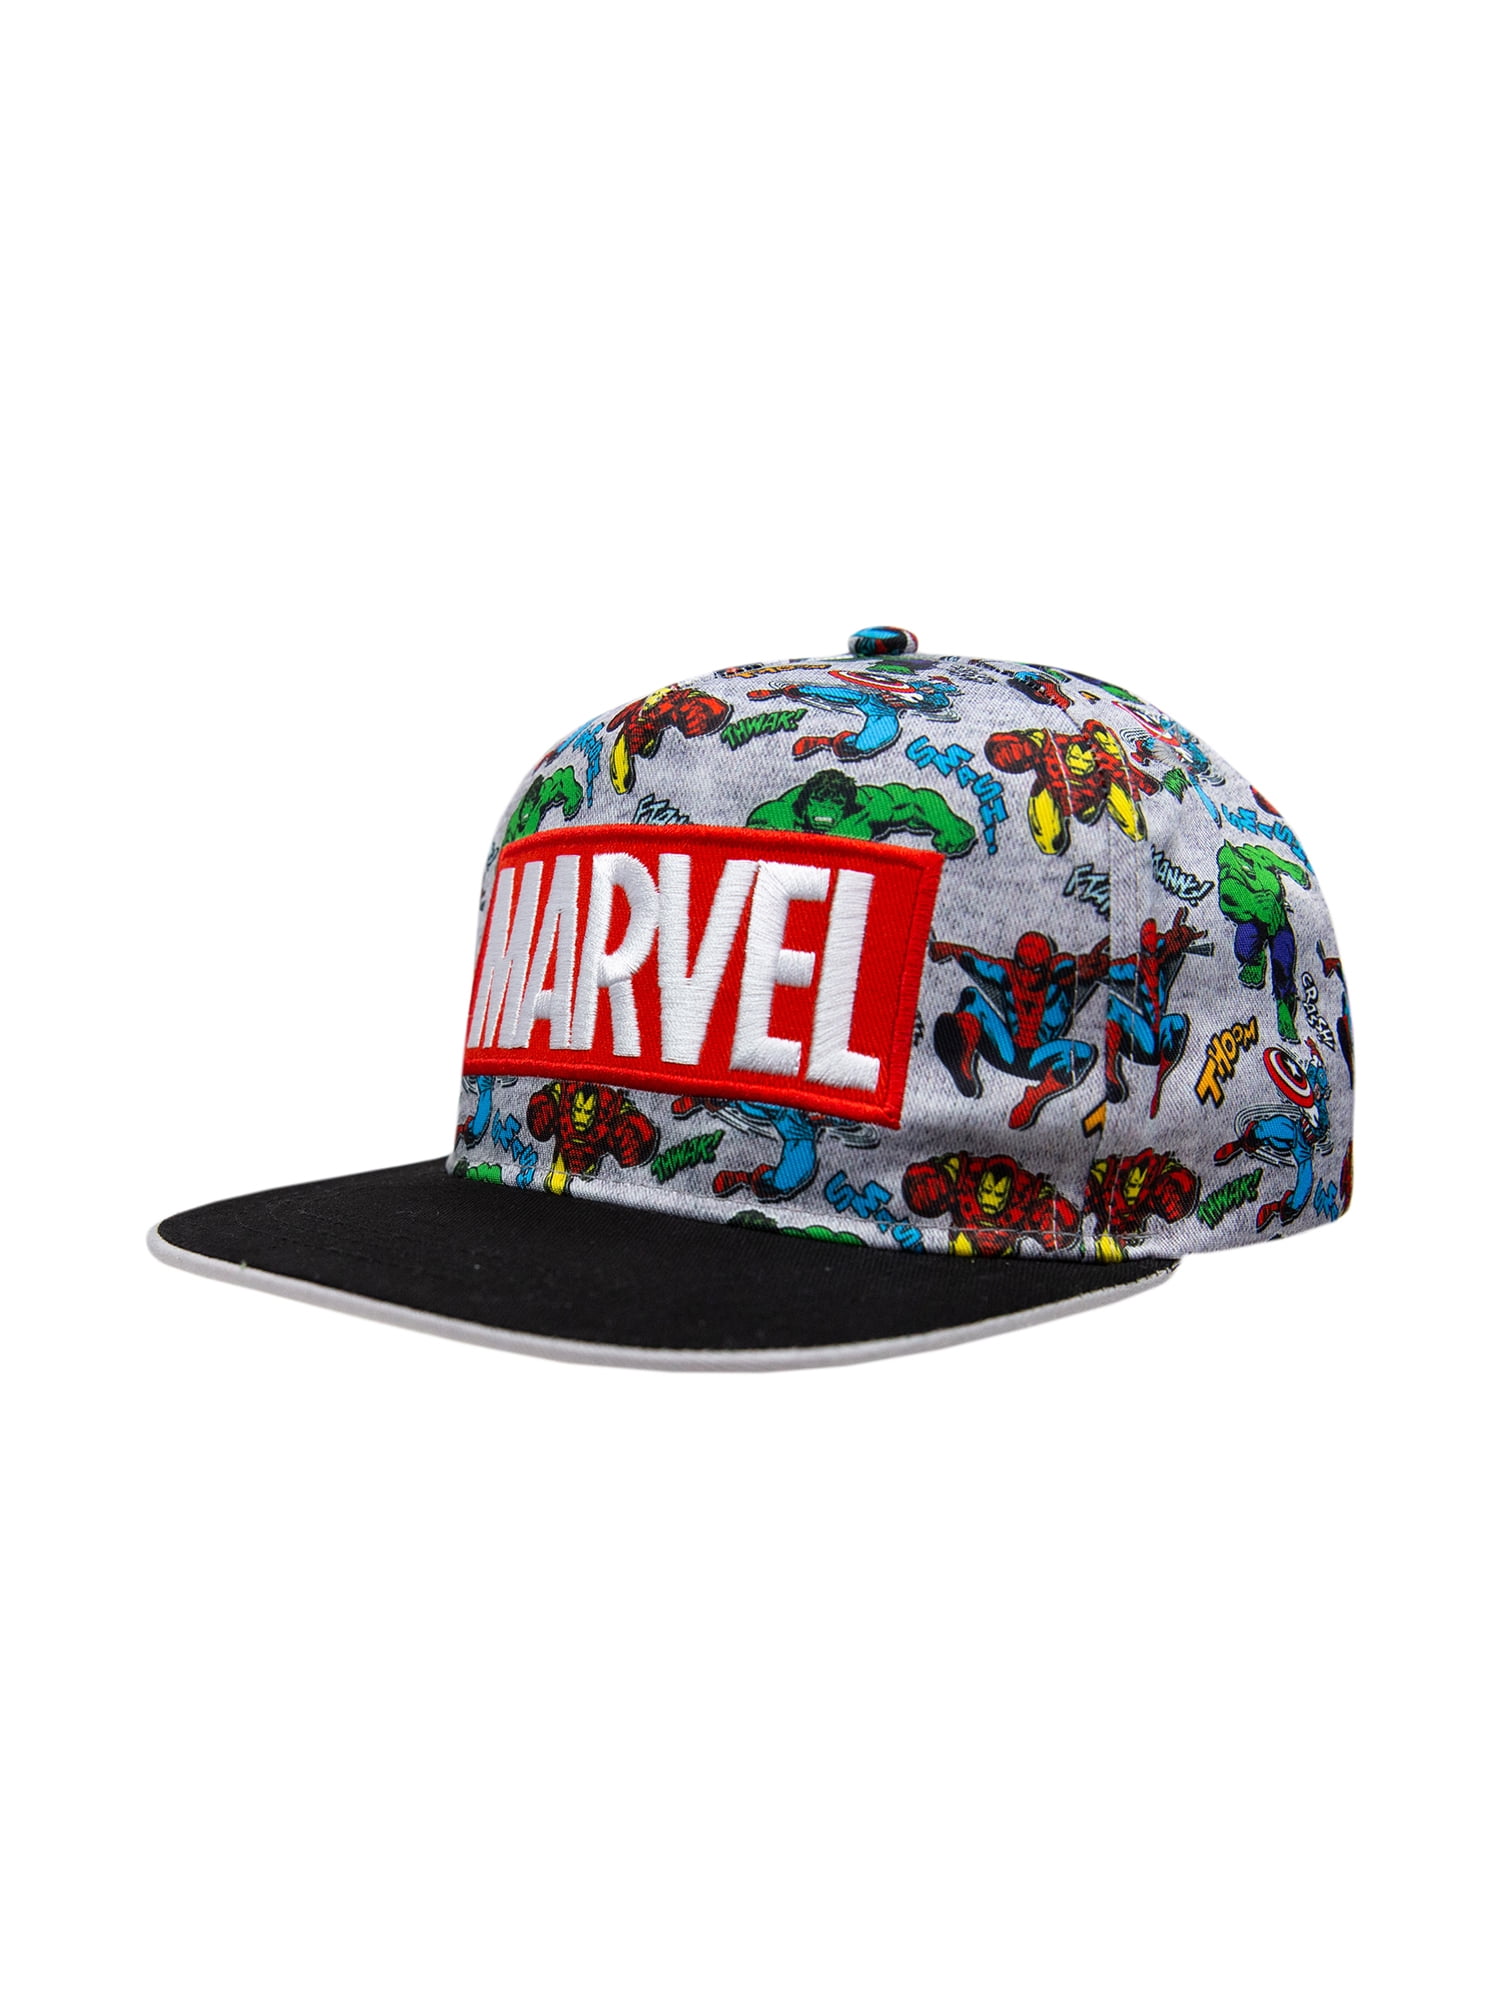 Toddler Boys Marvel Baseball Cap Style Hat